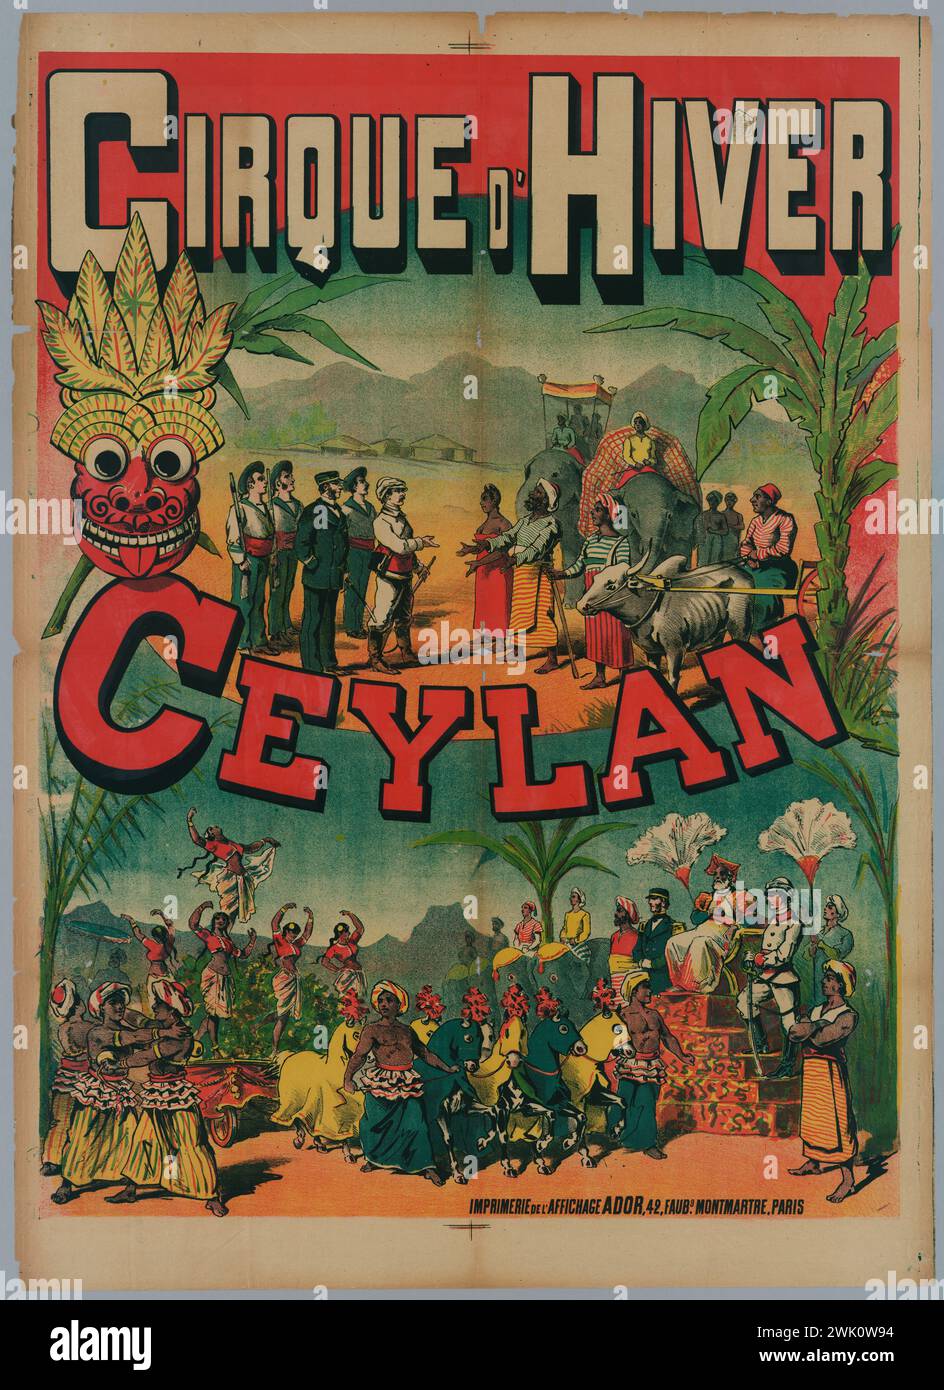 Anonyme, Winter Circus/ Ceylon (titre enregistré (lettre)), 1887. Lithographie en couleurs. Musée Carnavalet, histoire de Paris. Banque D'Images